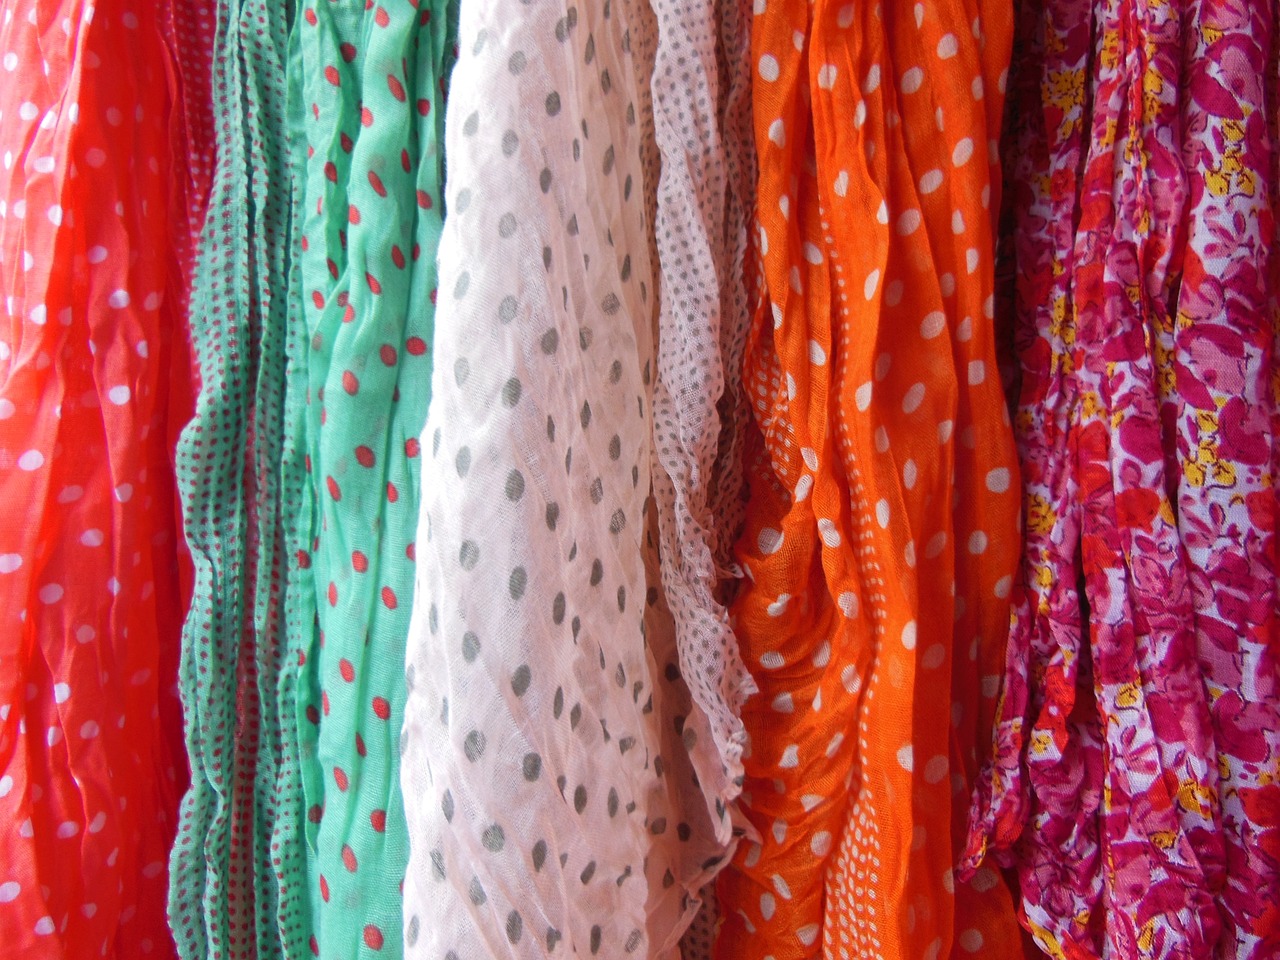 Budget vs. luksus: Hvad får du for pengene, når det gælder tørklæder?